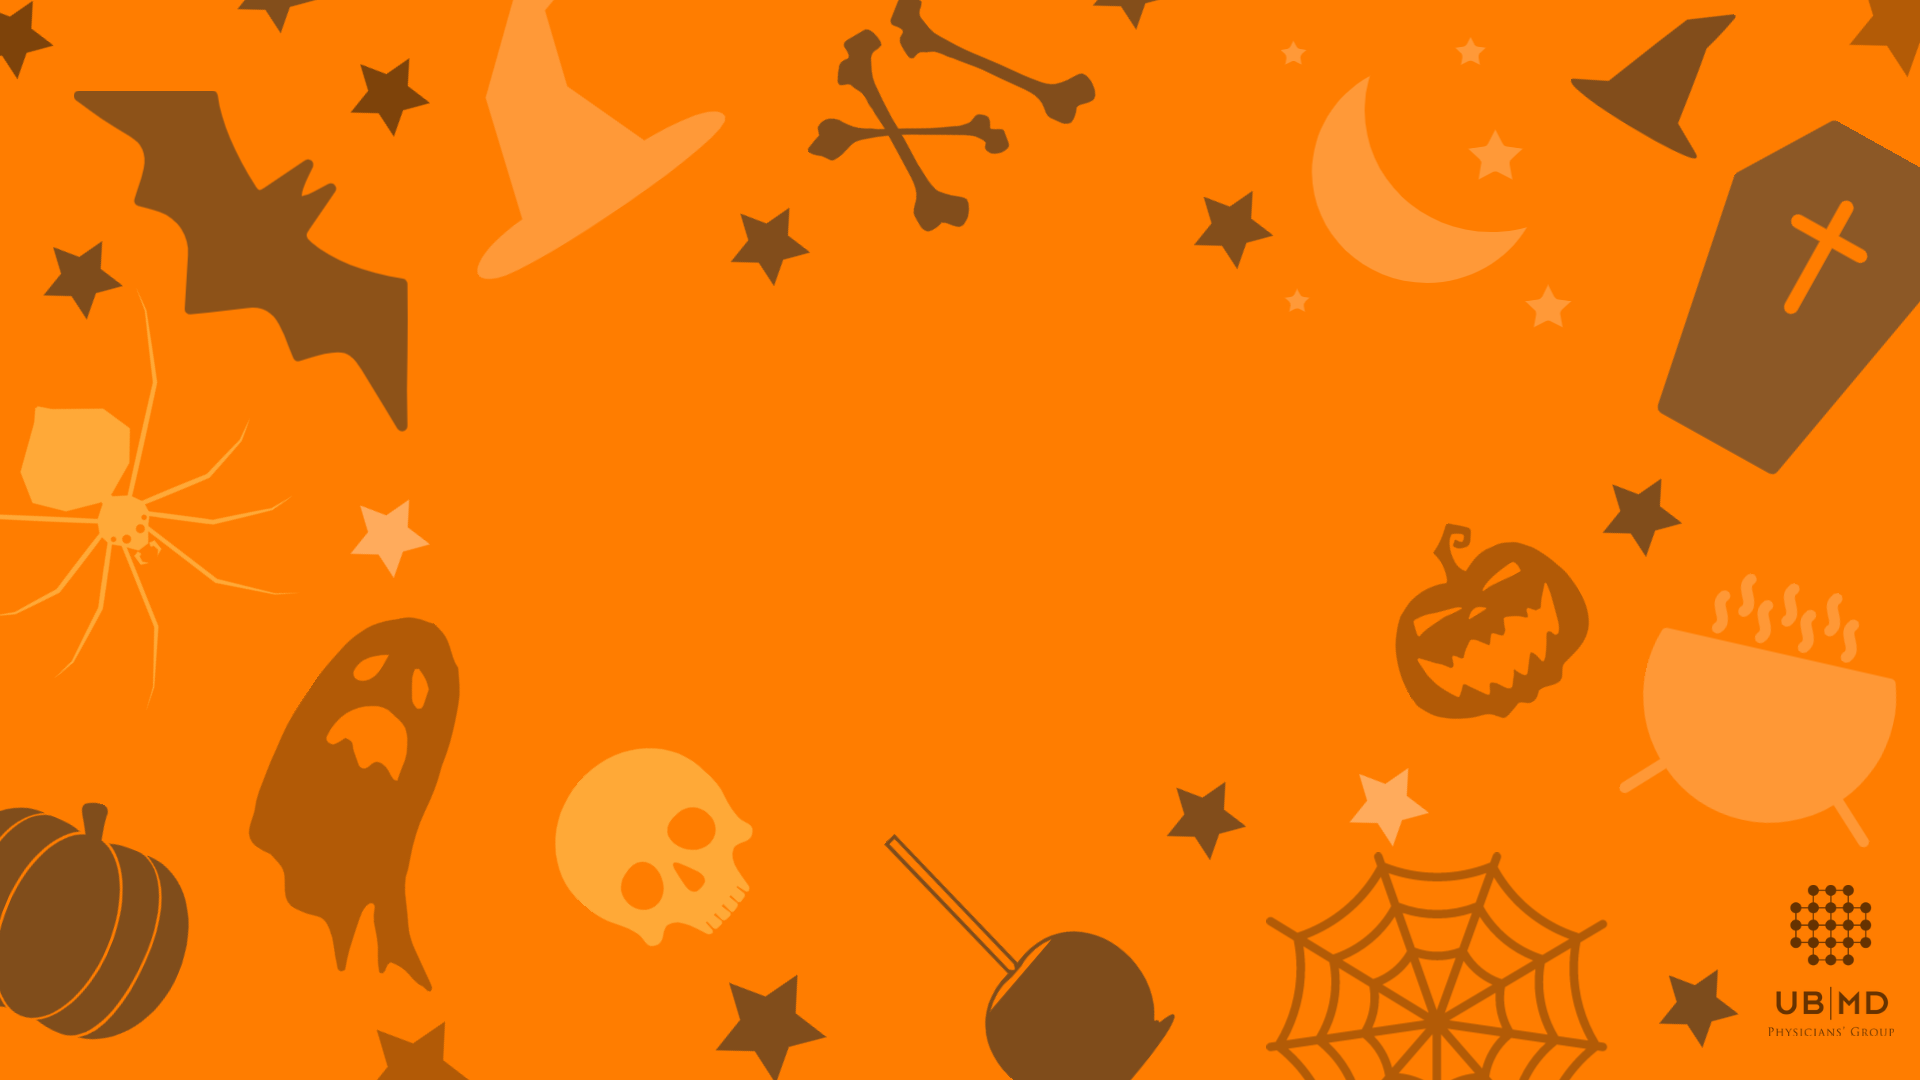 Virtual background Halloween là cách hoàn hảo để tạo một không gian Halloween tuyệt vời ngay tại nhà bạn. Khám phá hình ảnh liên quan đến từ khóa này để tìm kiếm những ý tưởng tuyệt vời về virtual background ngày Halloween.